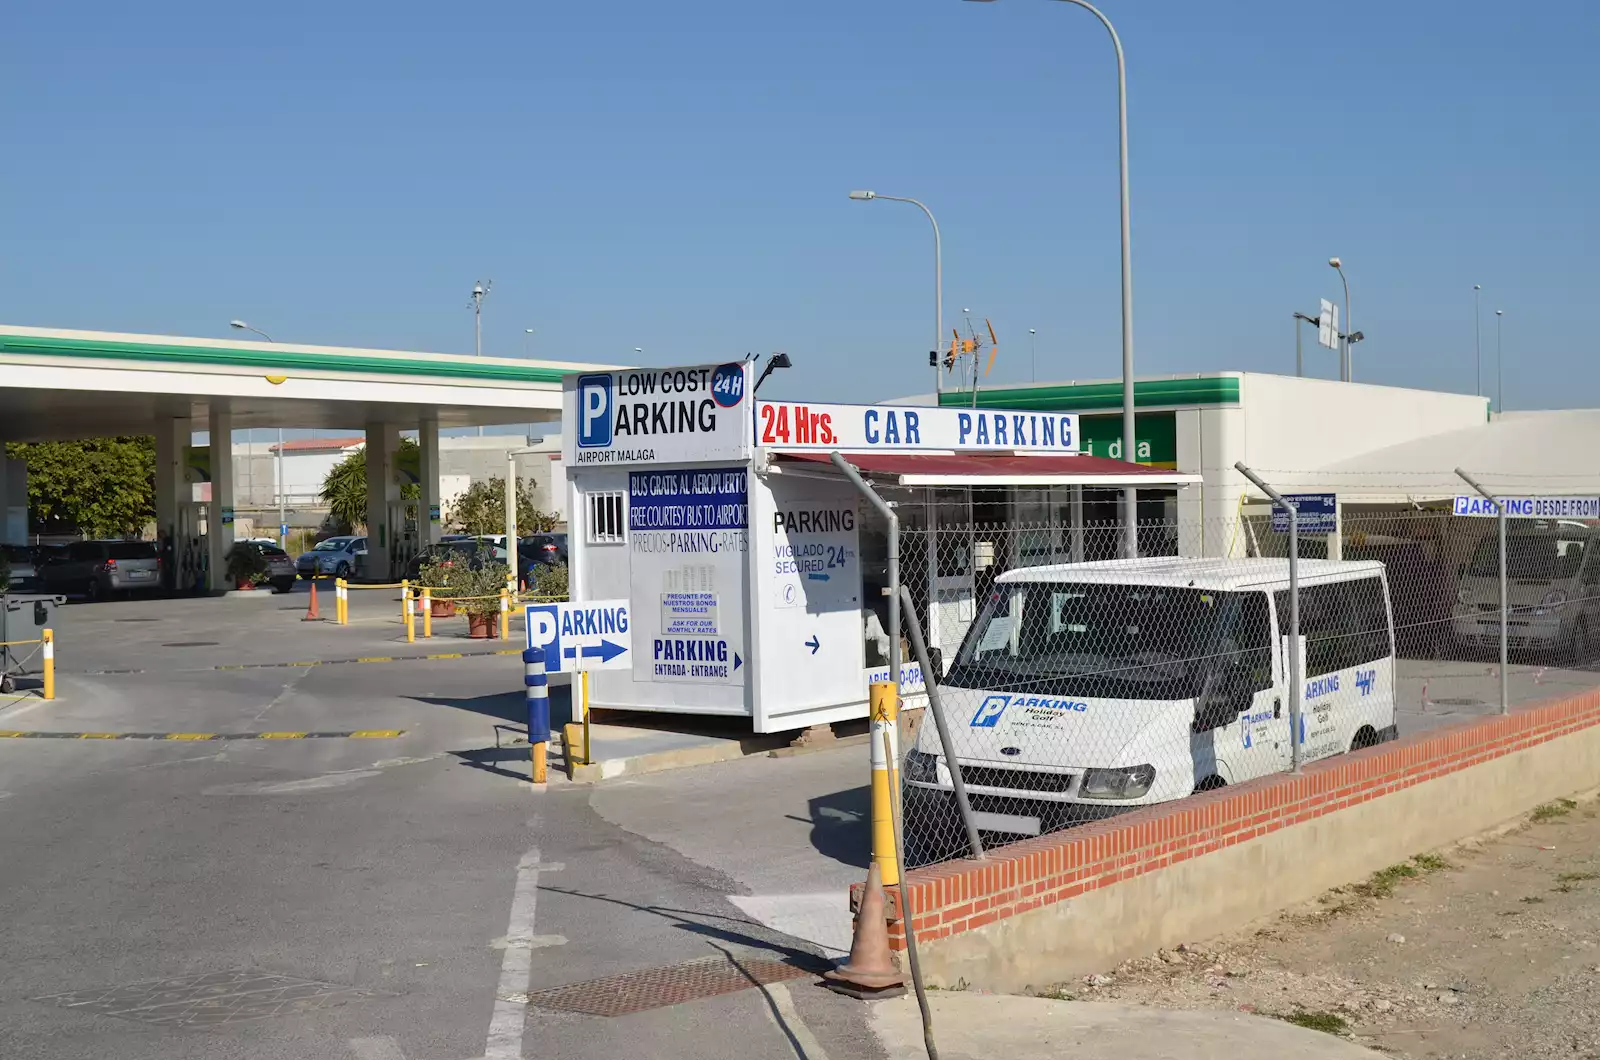 aparcamiento low cost aeropuerto Malaga